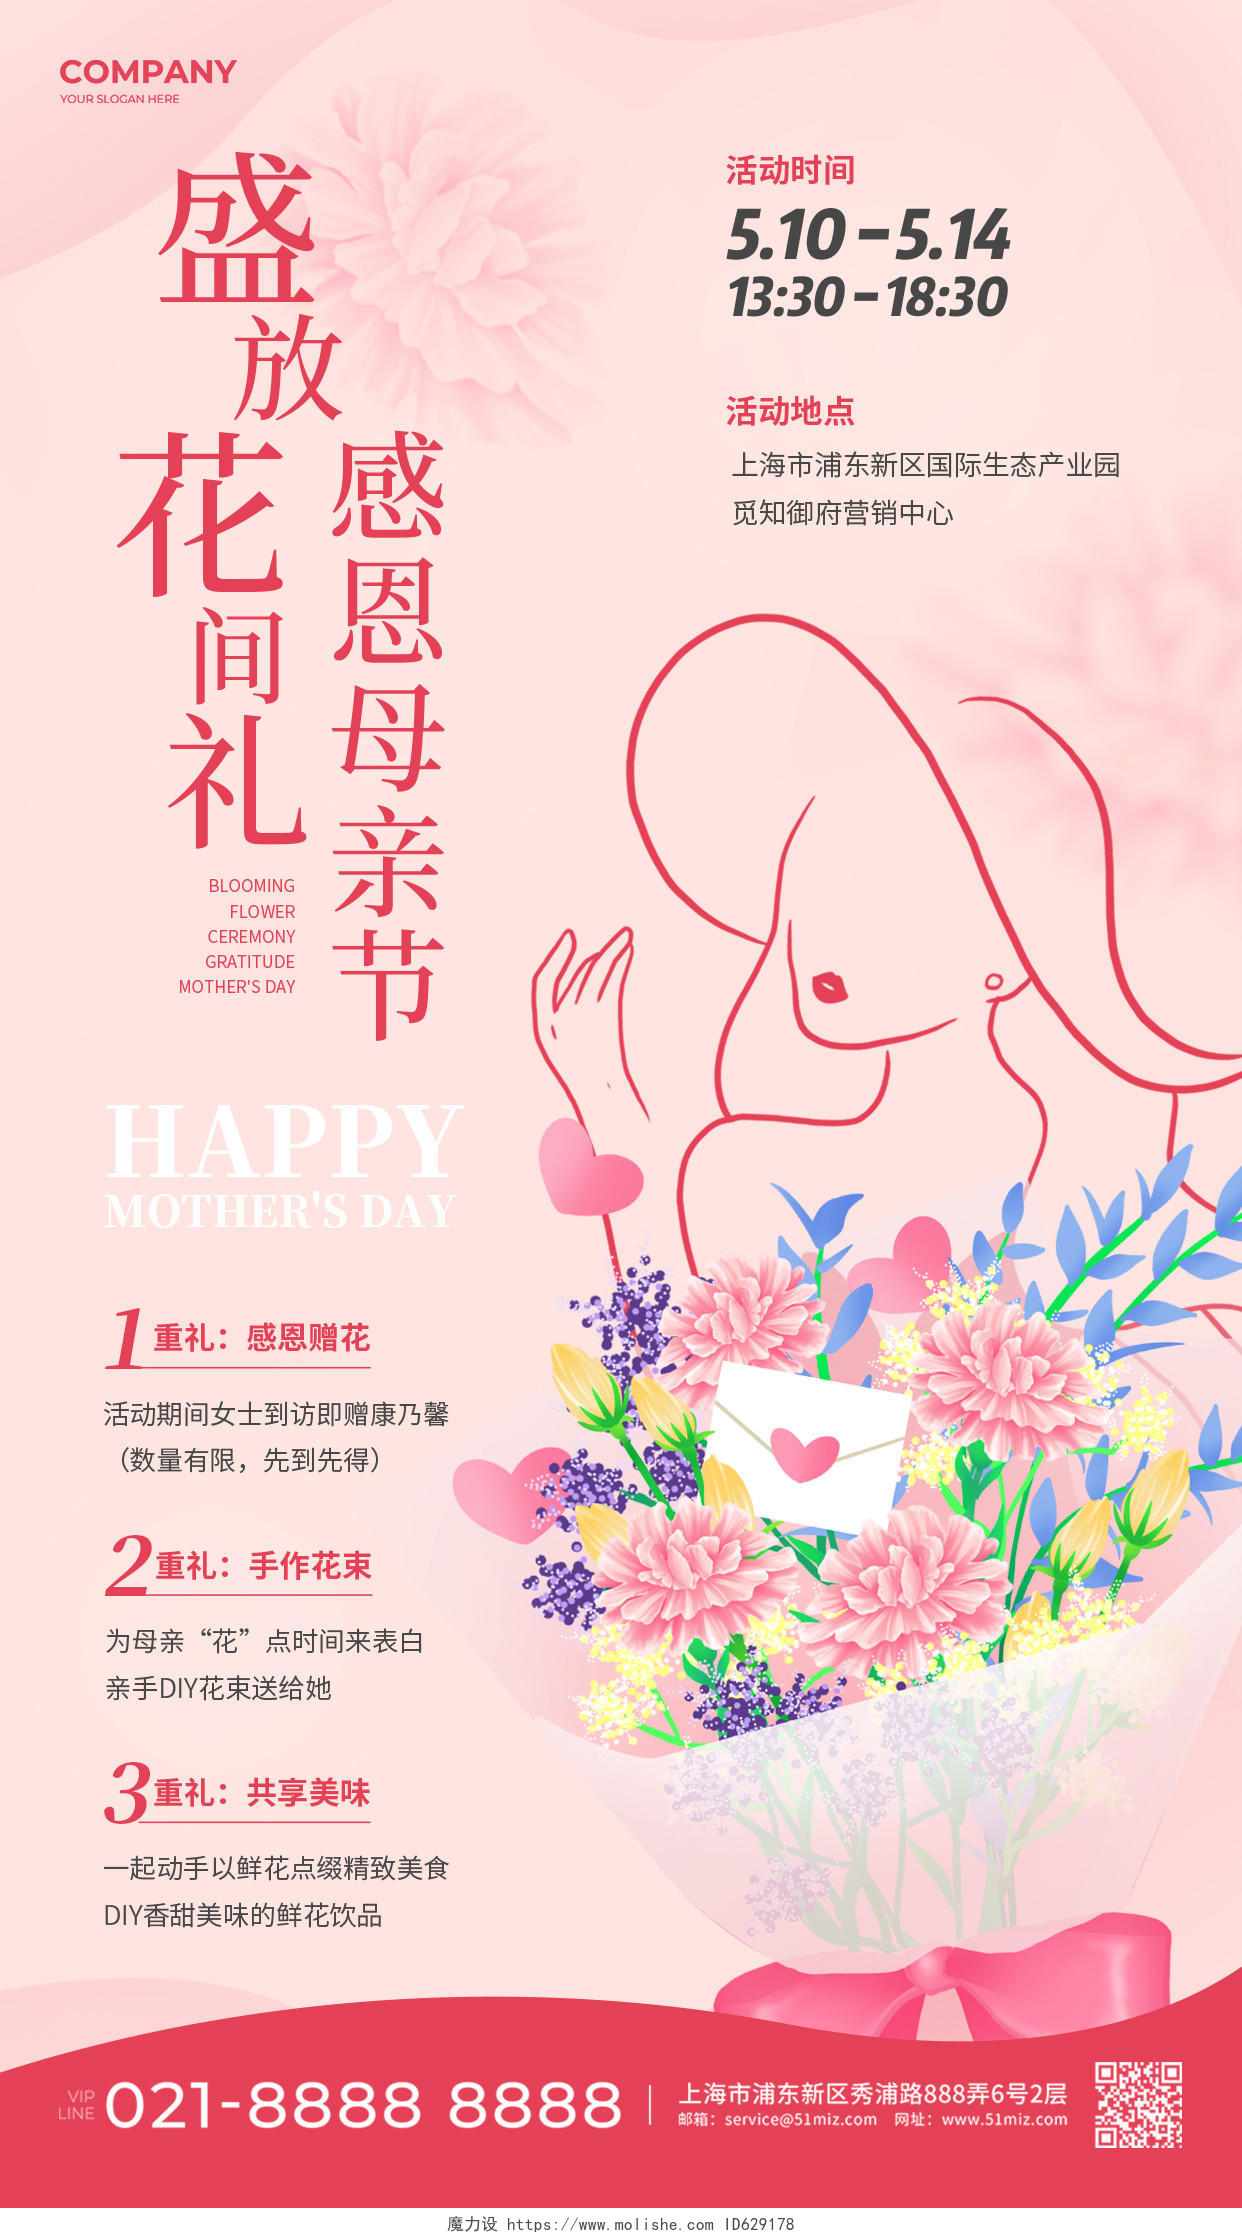 粉色简约插画盛放花间礼感恩母亲节活动手机海报